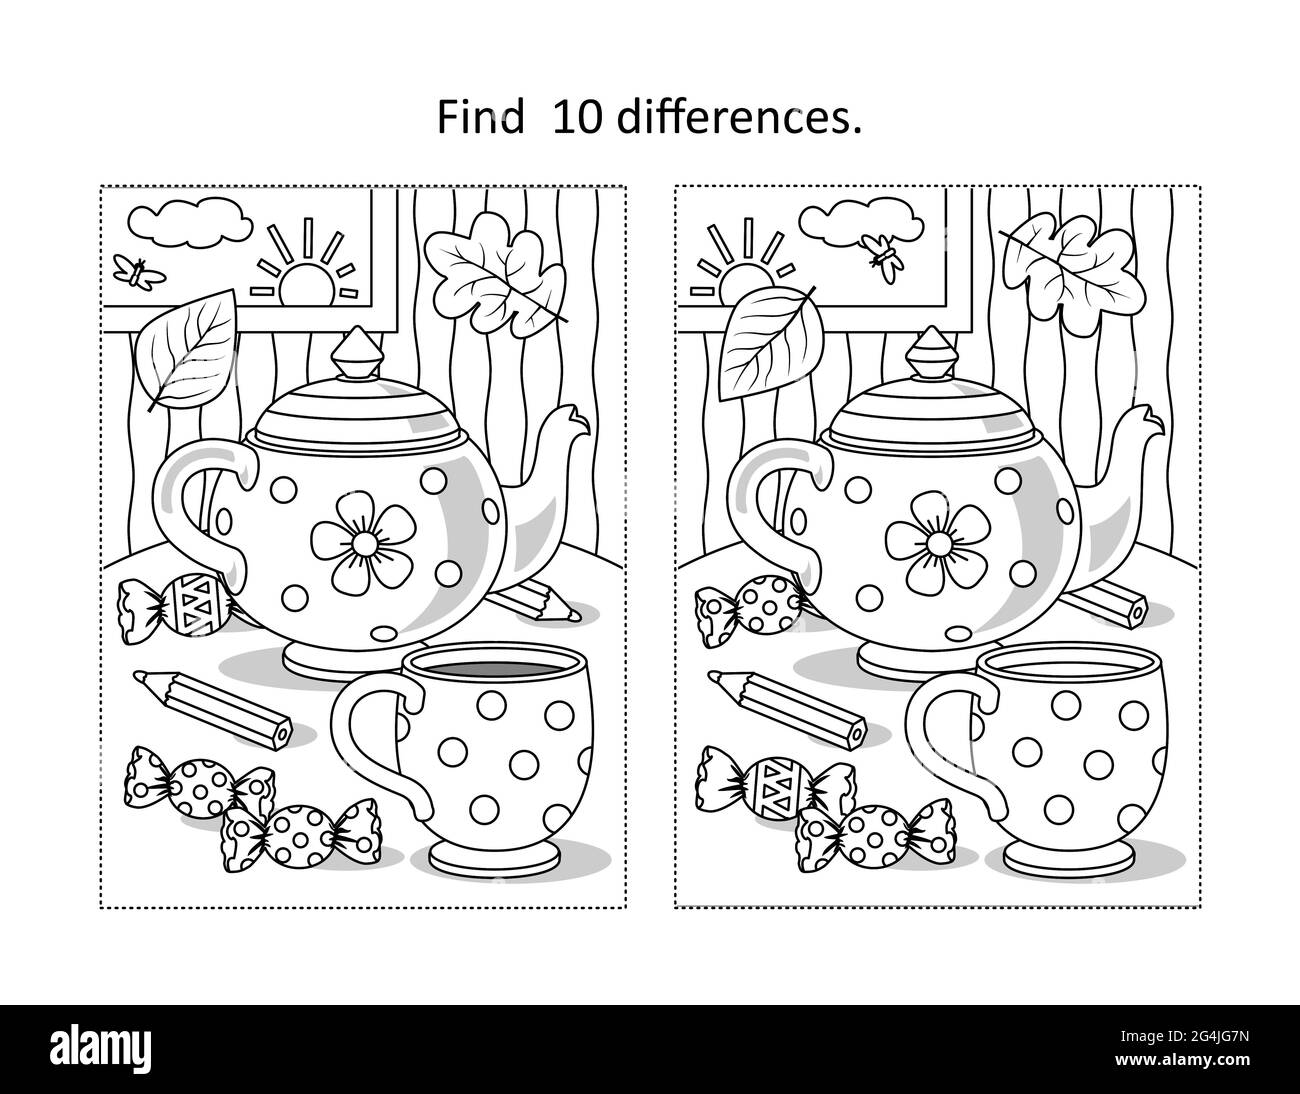 Trouvez 10 différences visuel puzzle et page de coloriage avec tasse, théière, bonbons Banque D'Images